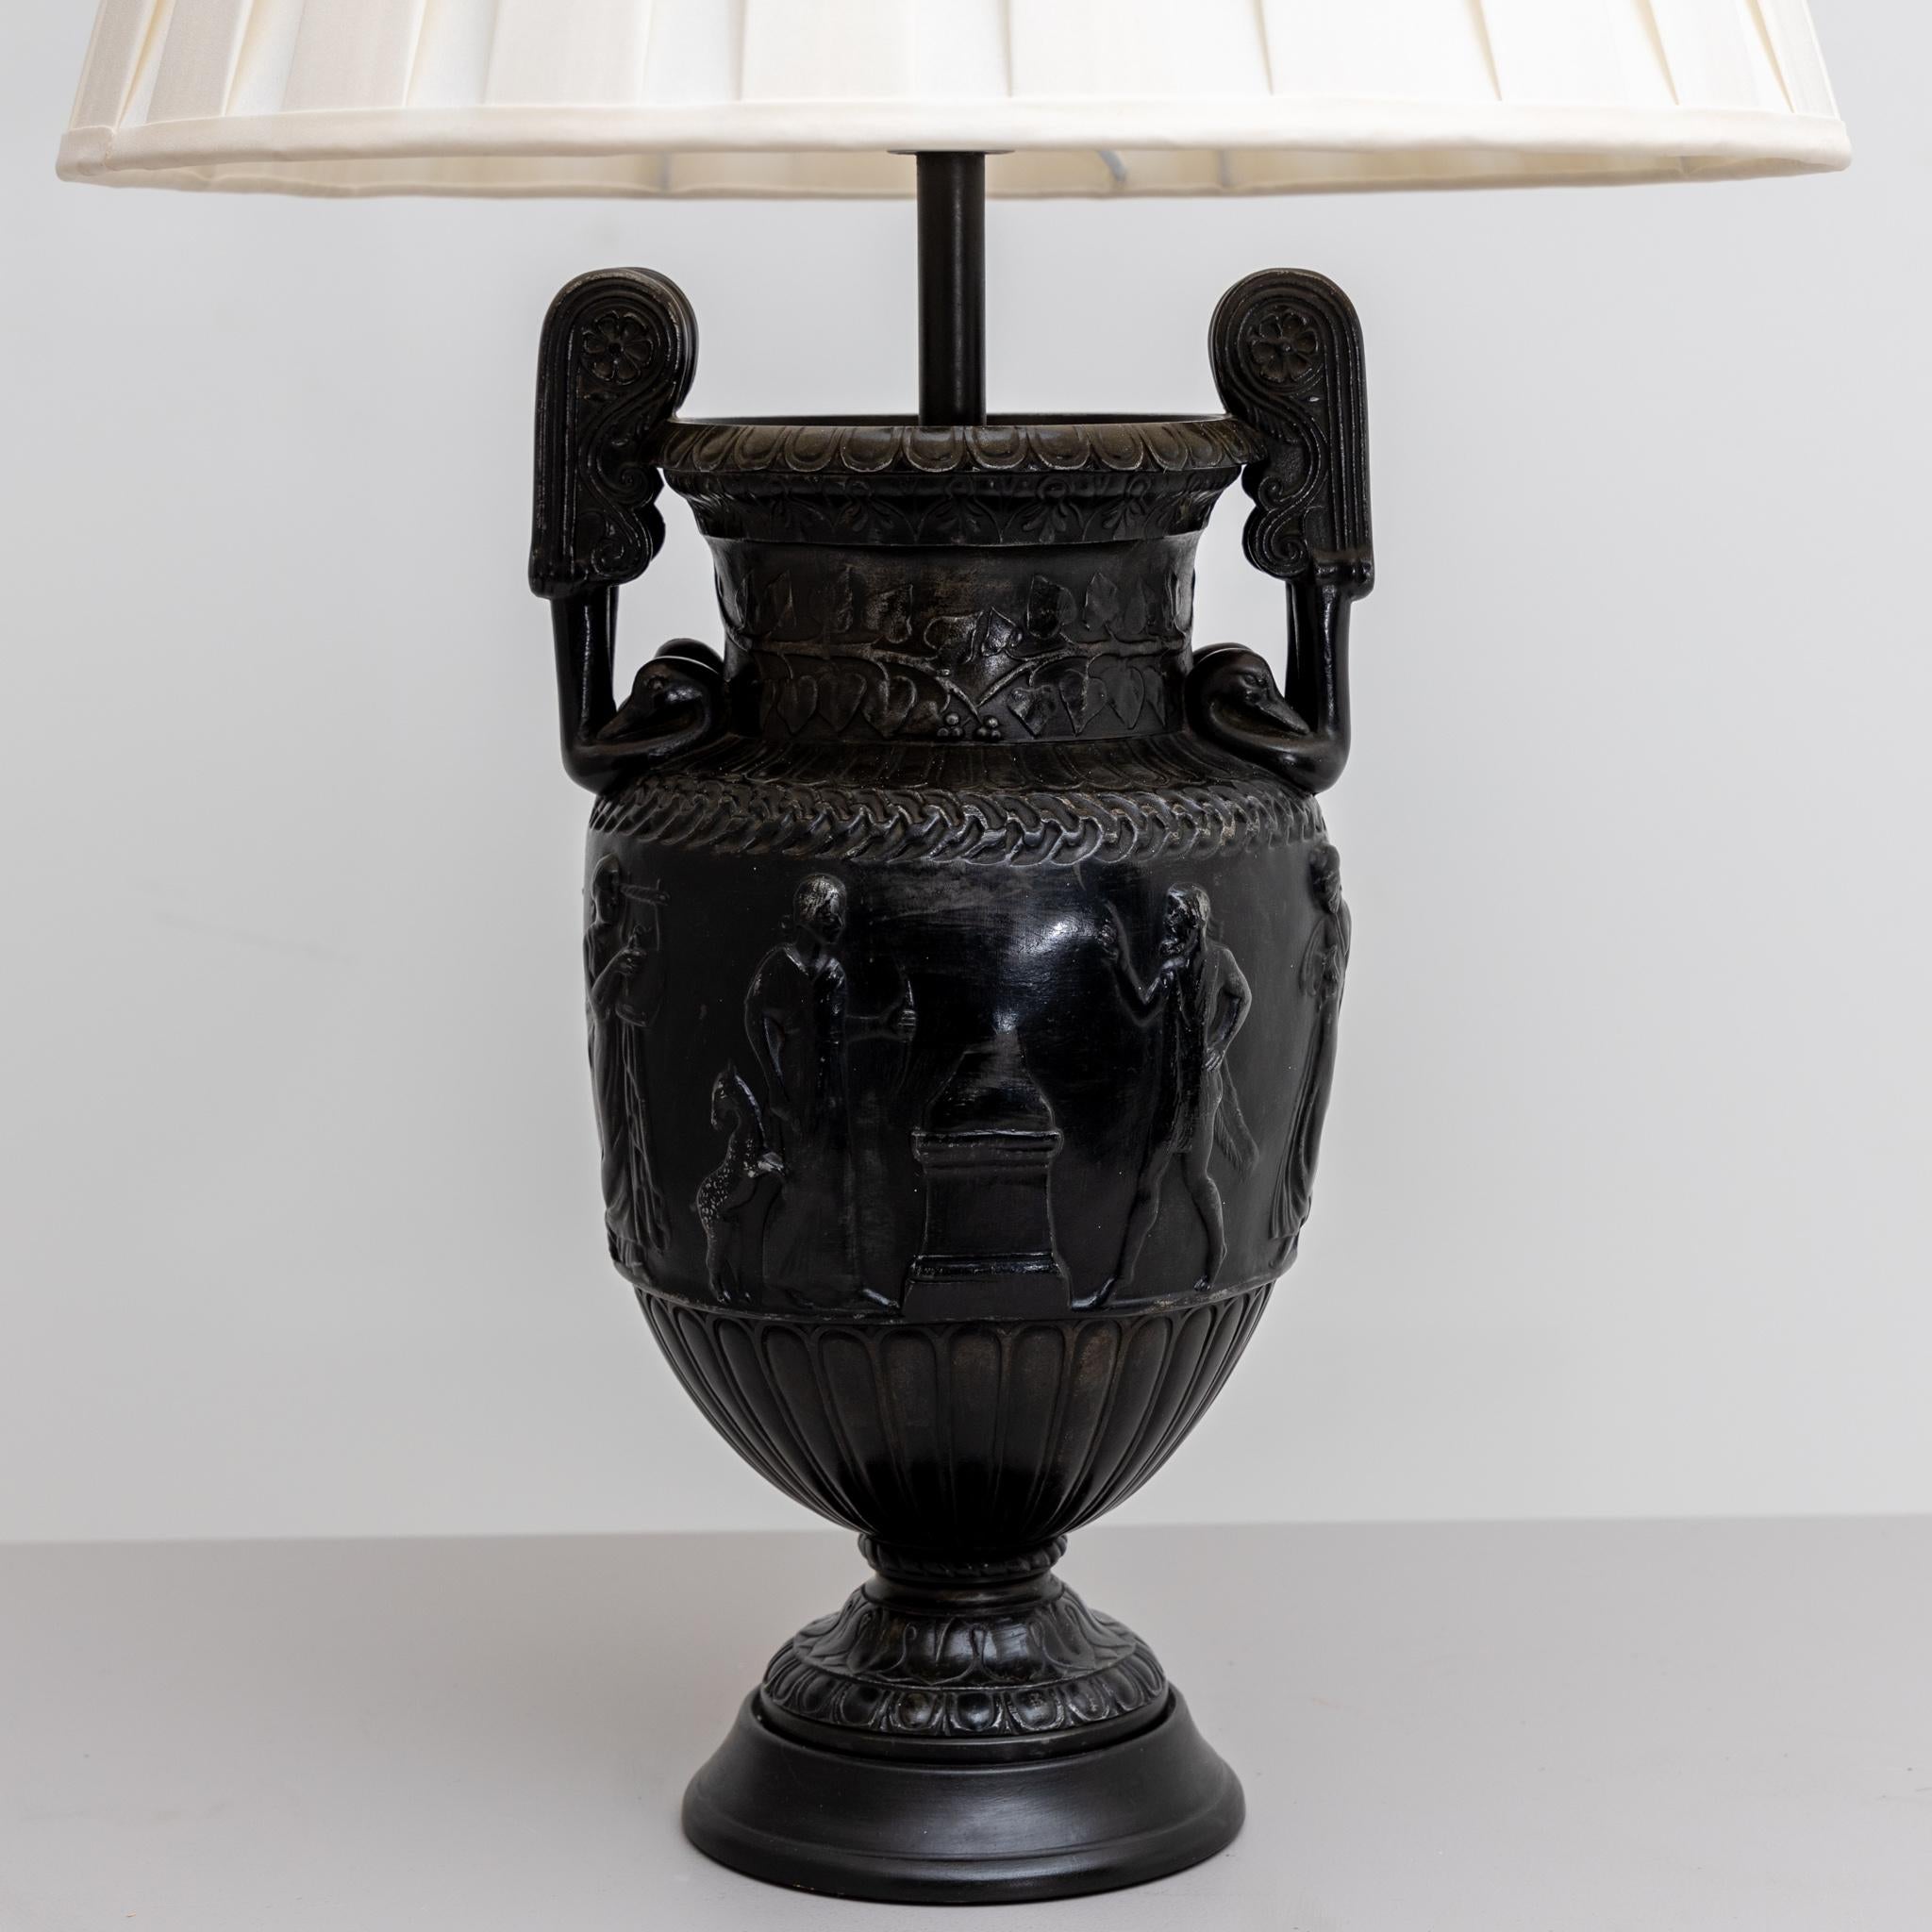 Tischlampen mit Townley-Vasen, Frankreich, 19. Jahrhundert (Stoff)